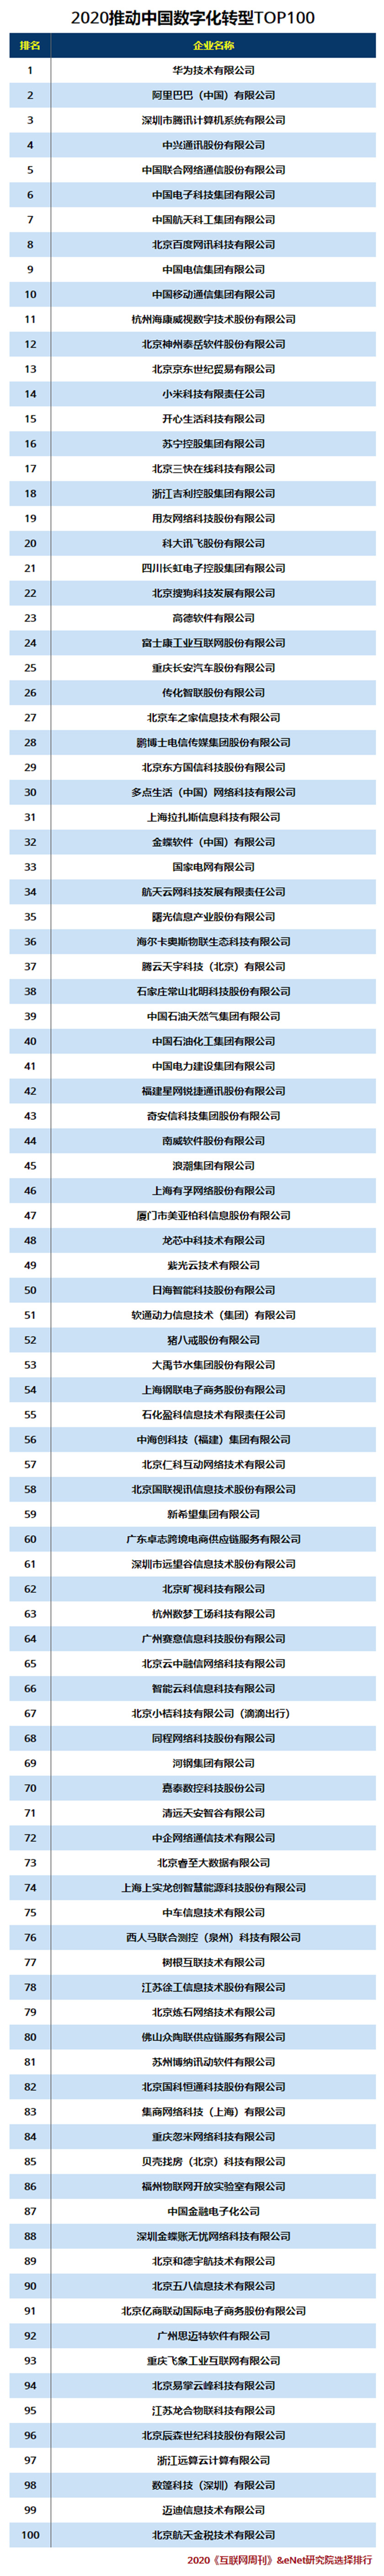 2020推动中国数字化转型TOP100.jpg